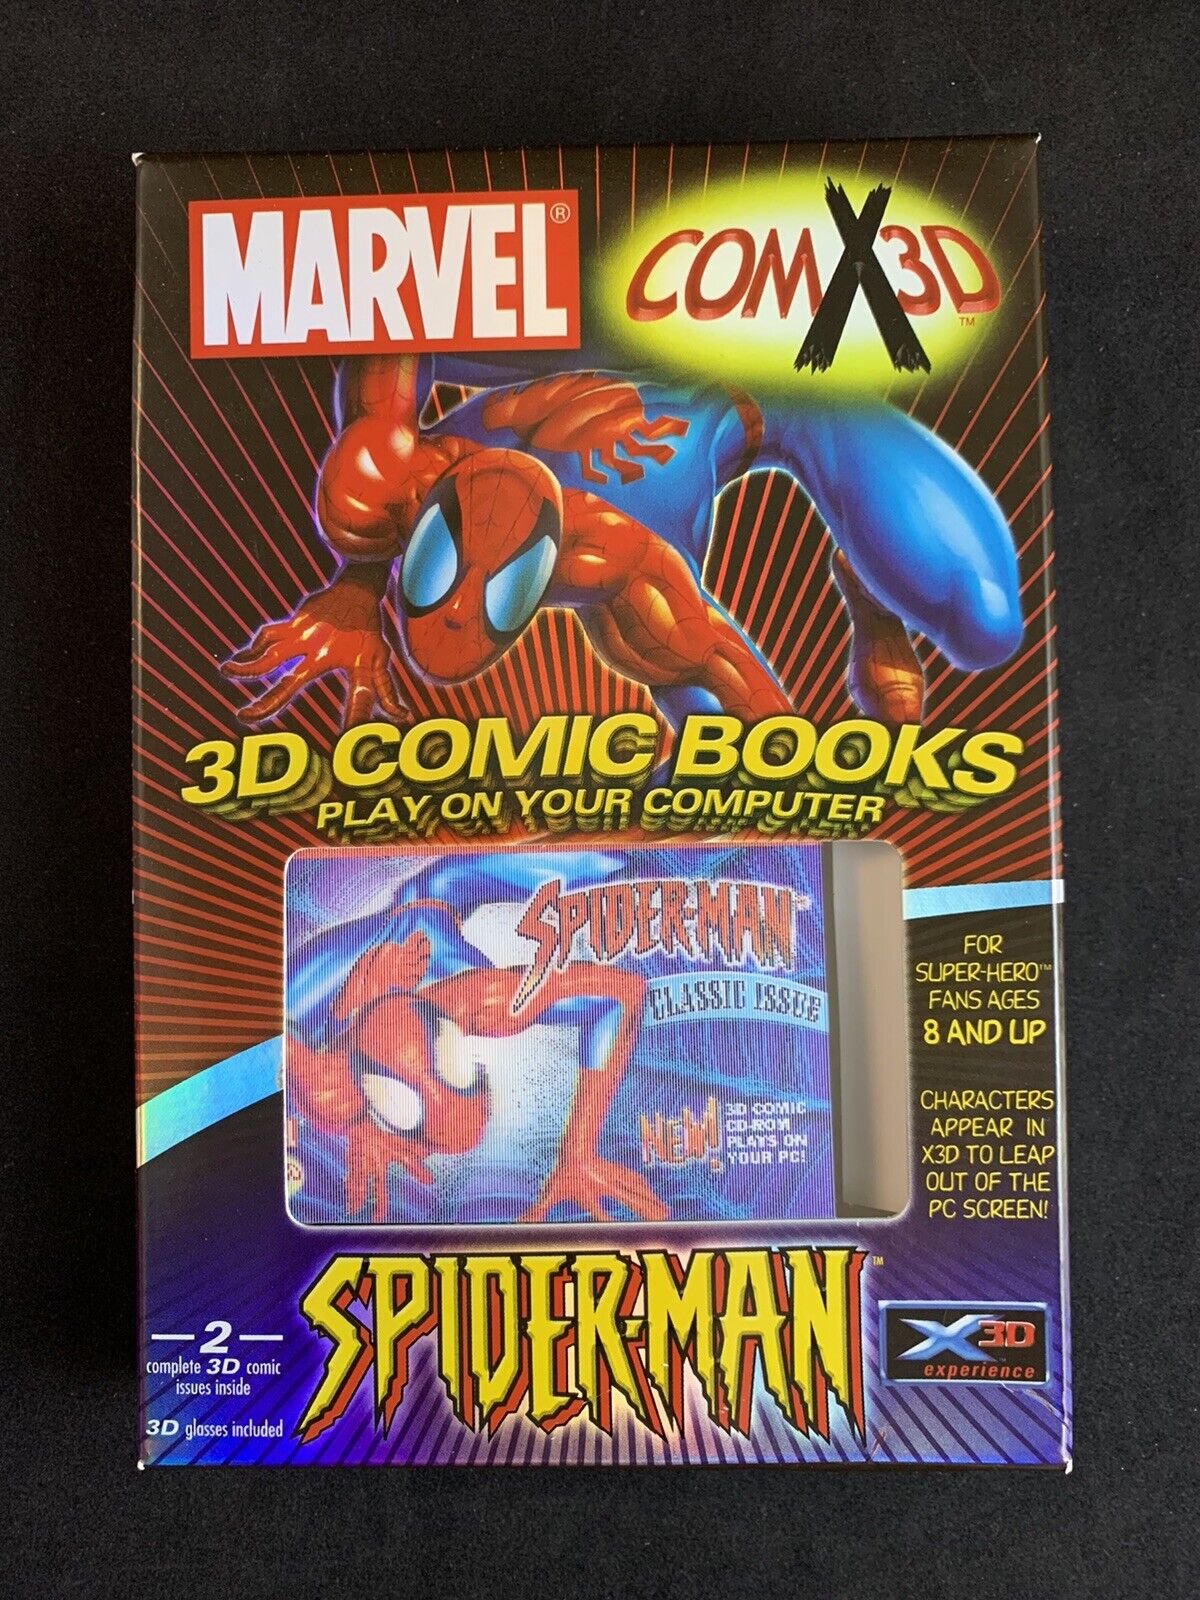 2003 Marvel ComX3D Spider-Man 3D CD-ROM Comic Books & 3D Glasses